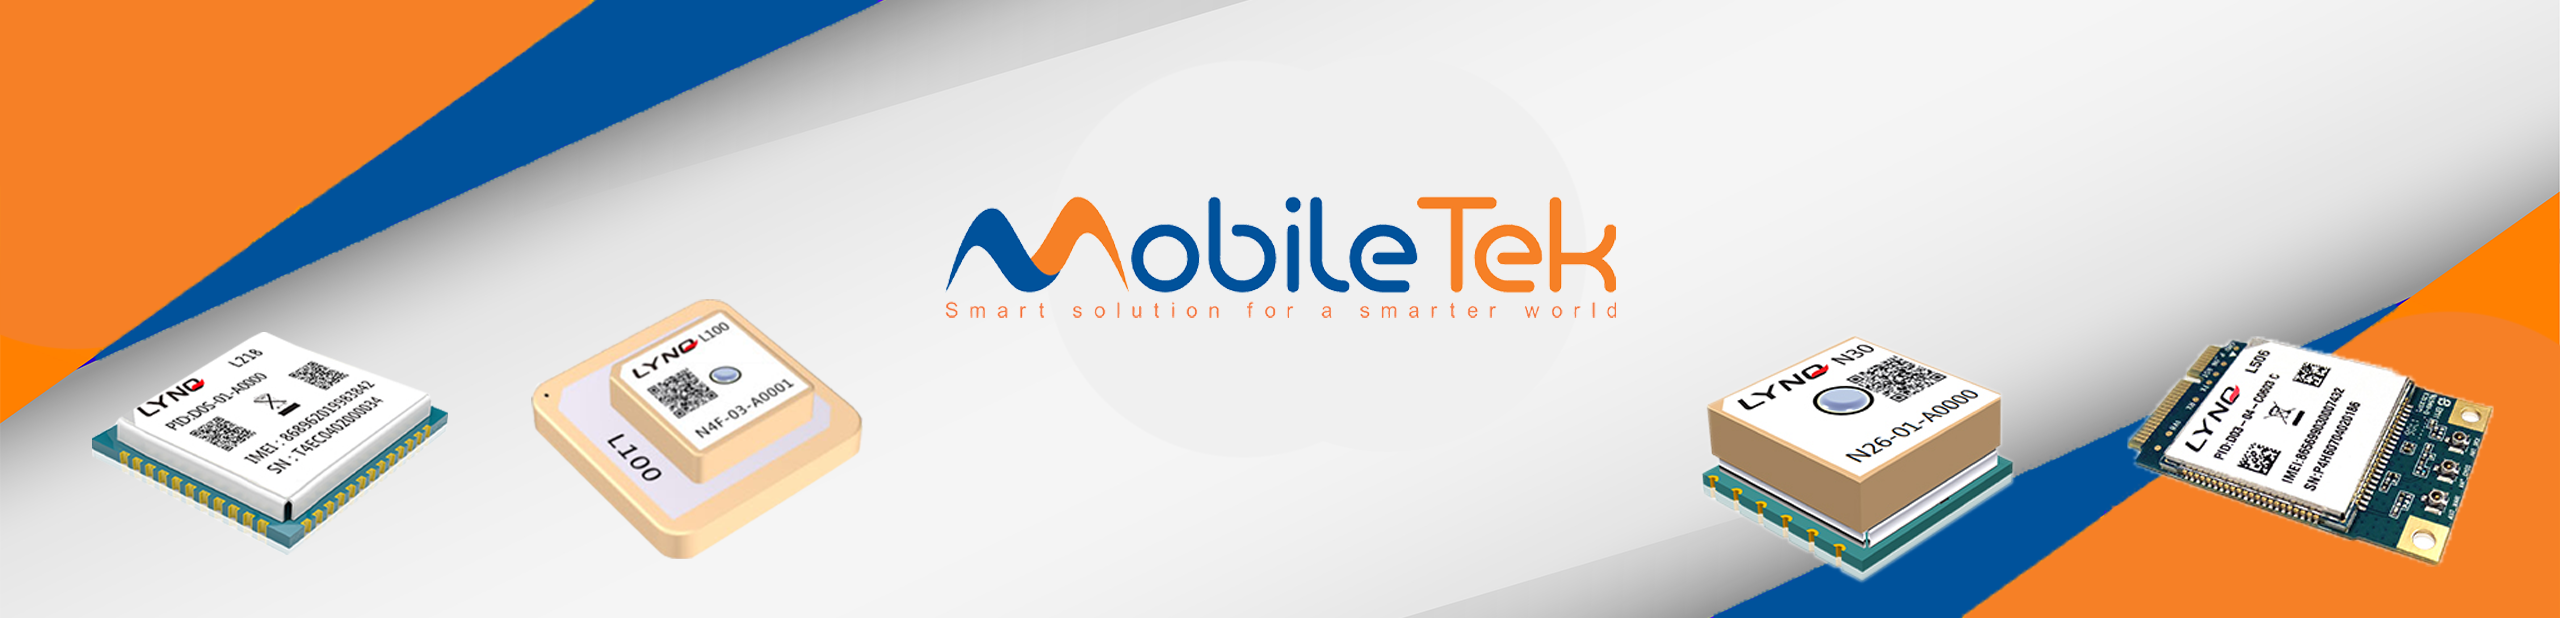 MobileTek-Banner